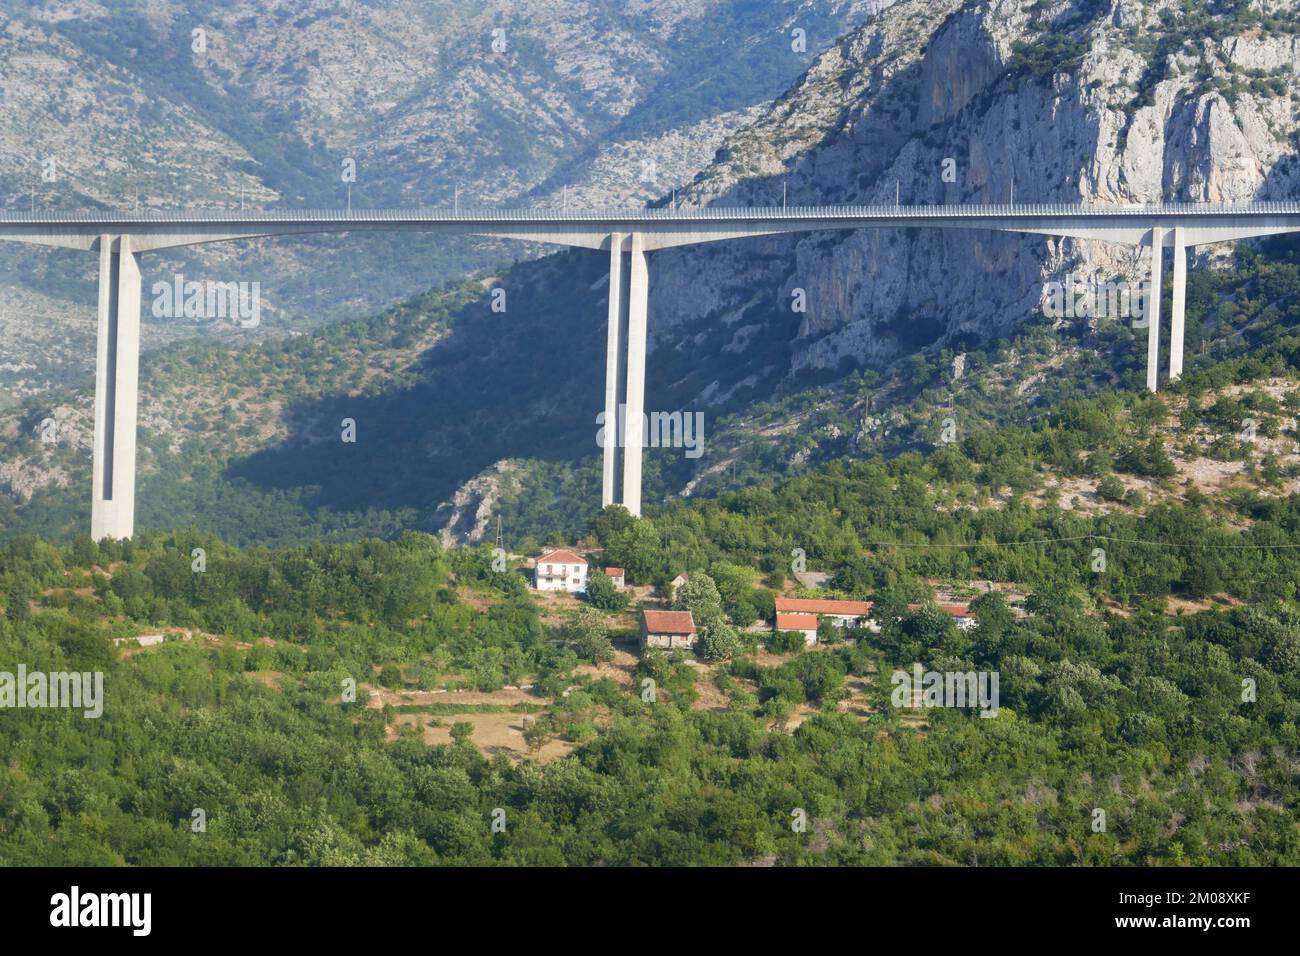 Controvertida autopista entre Bar a la frontera serbia, corrupción, China, tramo puente no lejos de Podgorica, Montenegro, Europa Foto de stock